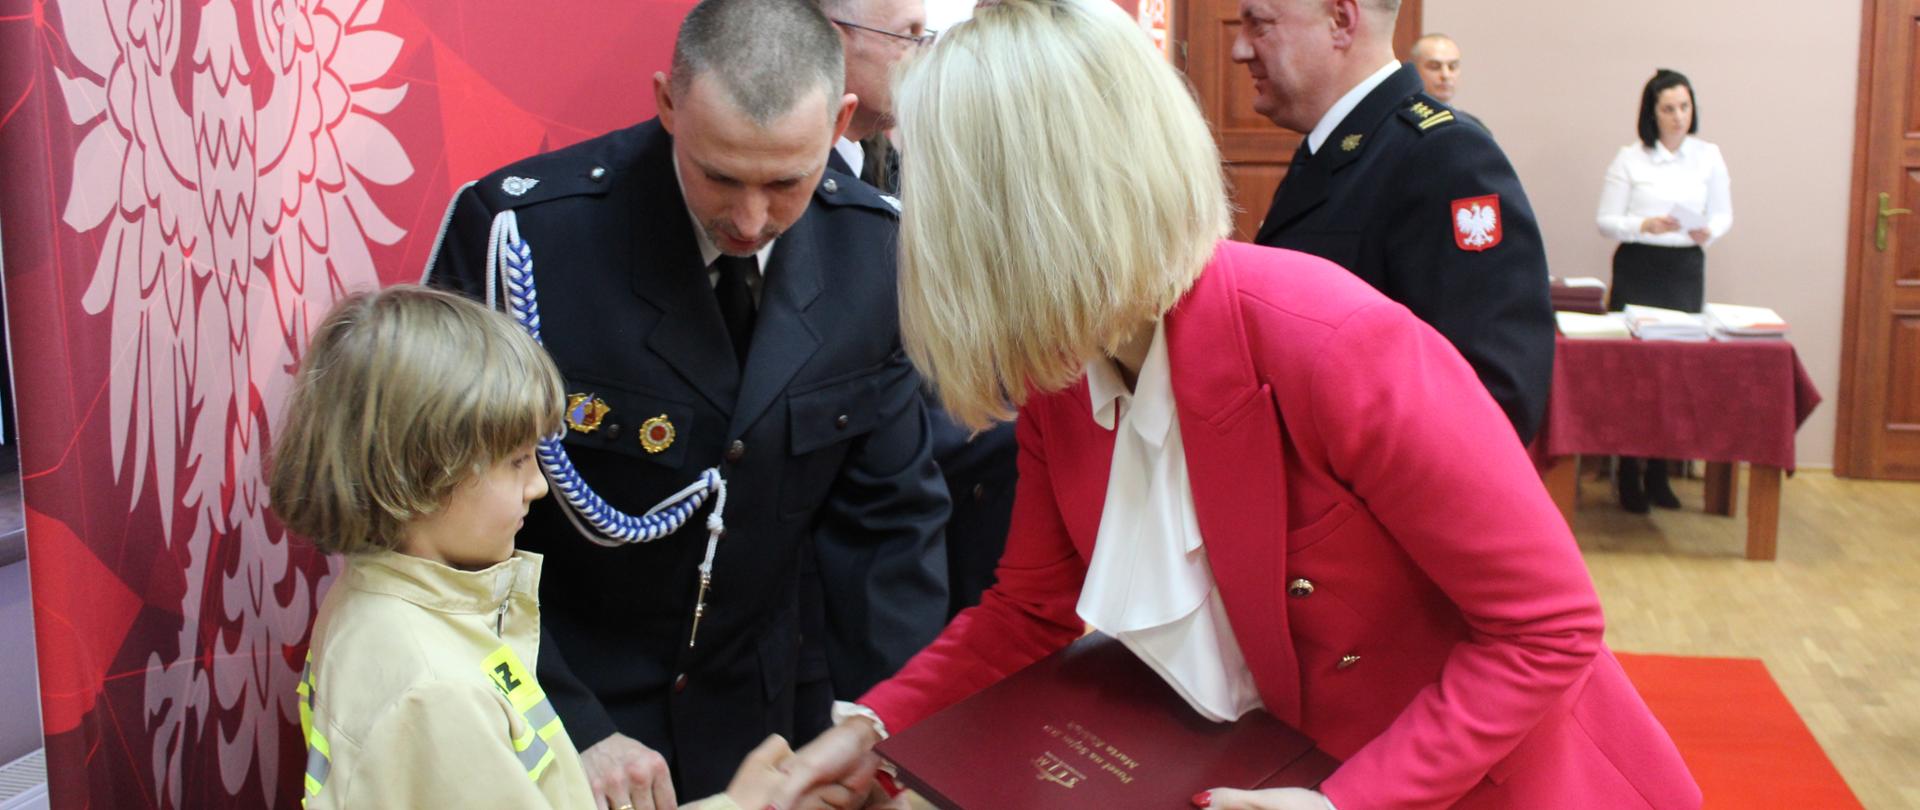 Kobieta blondynka w czerwonej marynarce ściska dłoń dziewczynce ubranej w mundur strażaka, obok strażak mężczyna, w tle grupa ludzi